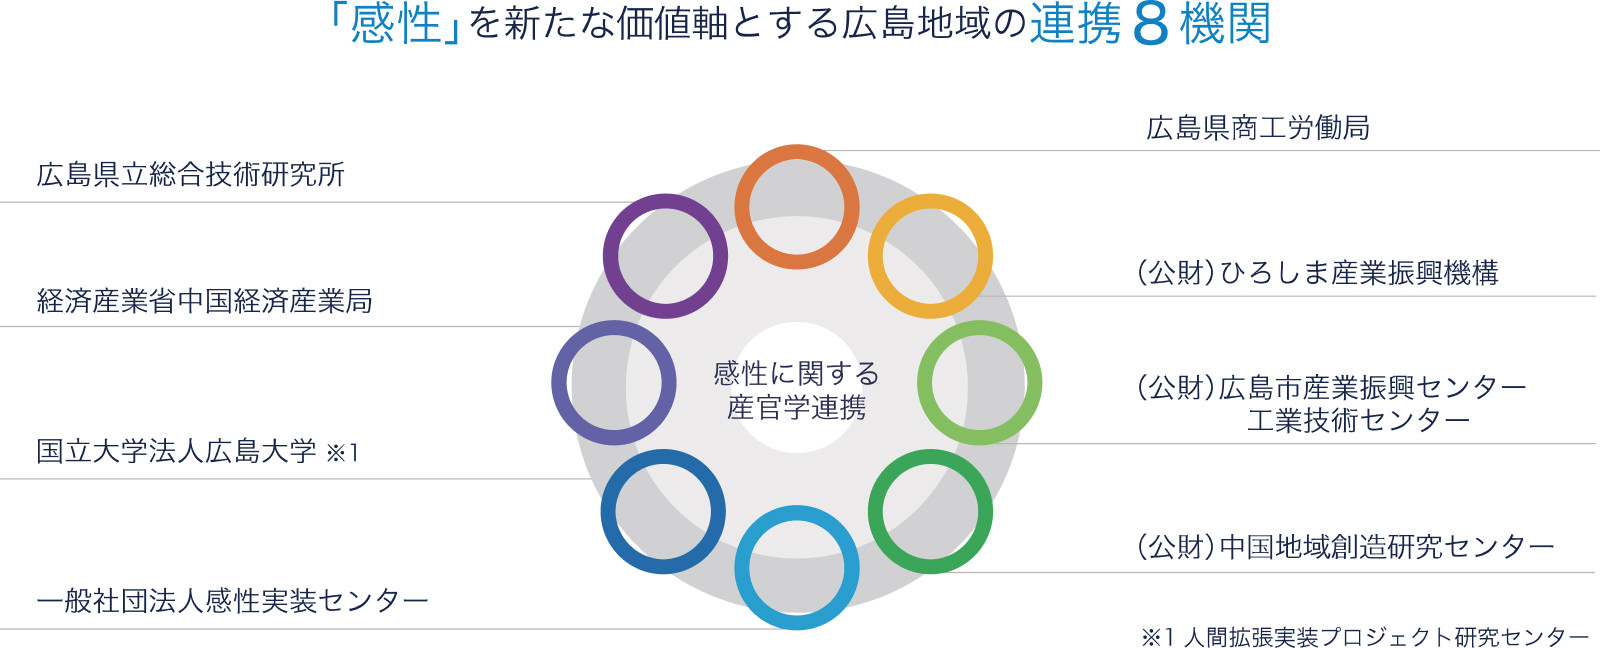 広島地域の連携8機関